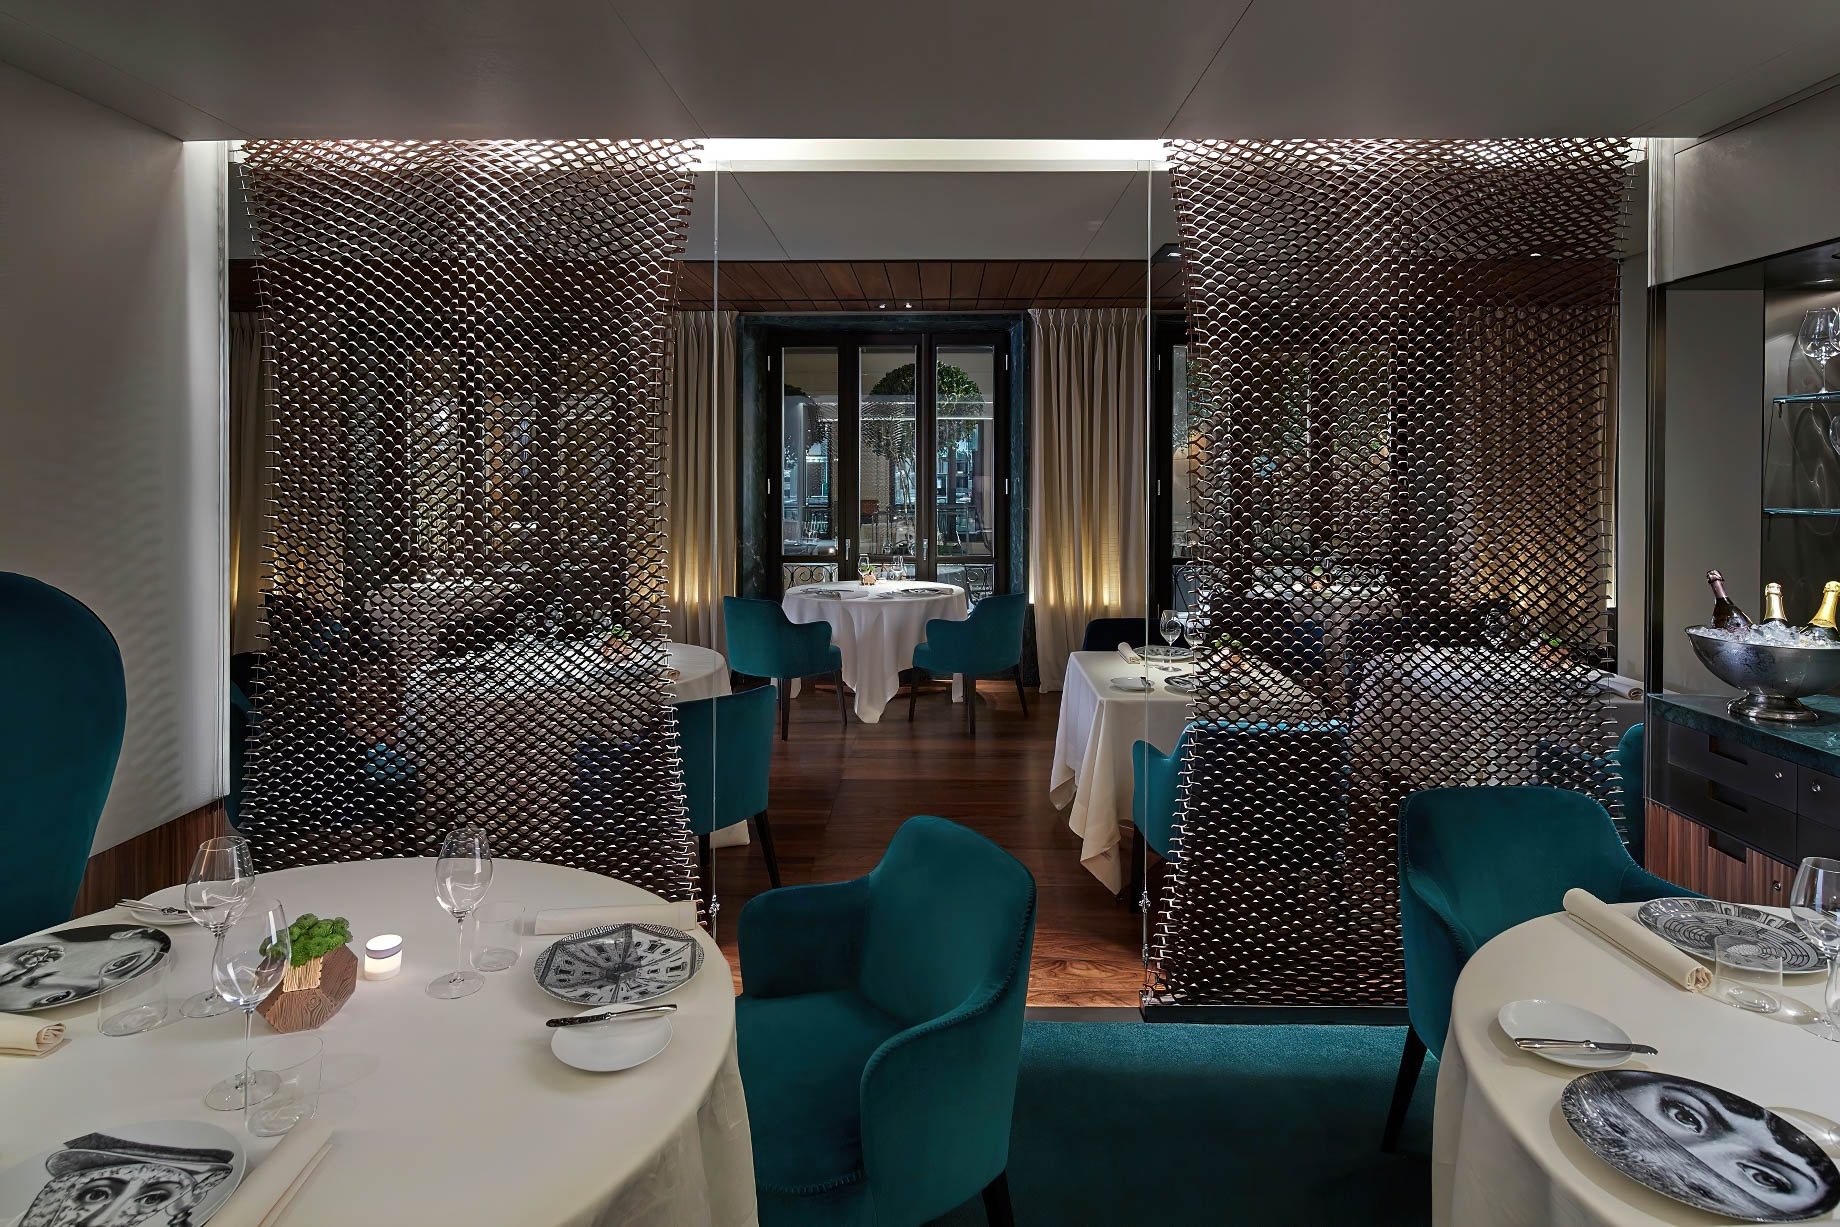 Mandarin Oriental, Milan Hotel – Milan, Italy – Seta Restaurant Dining Room